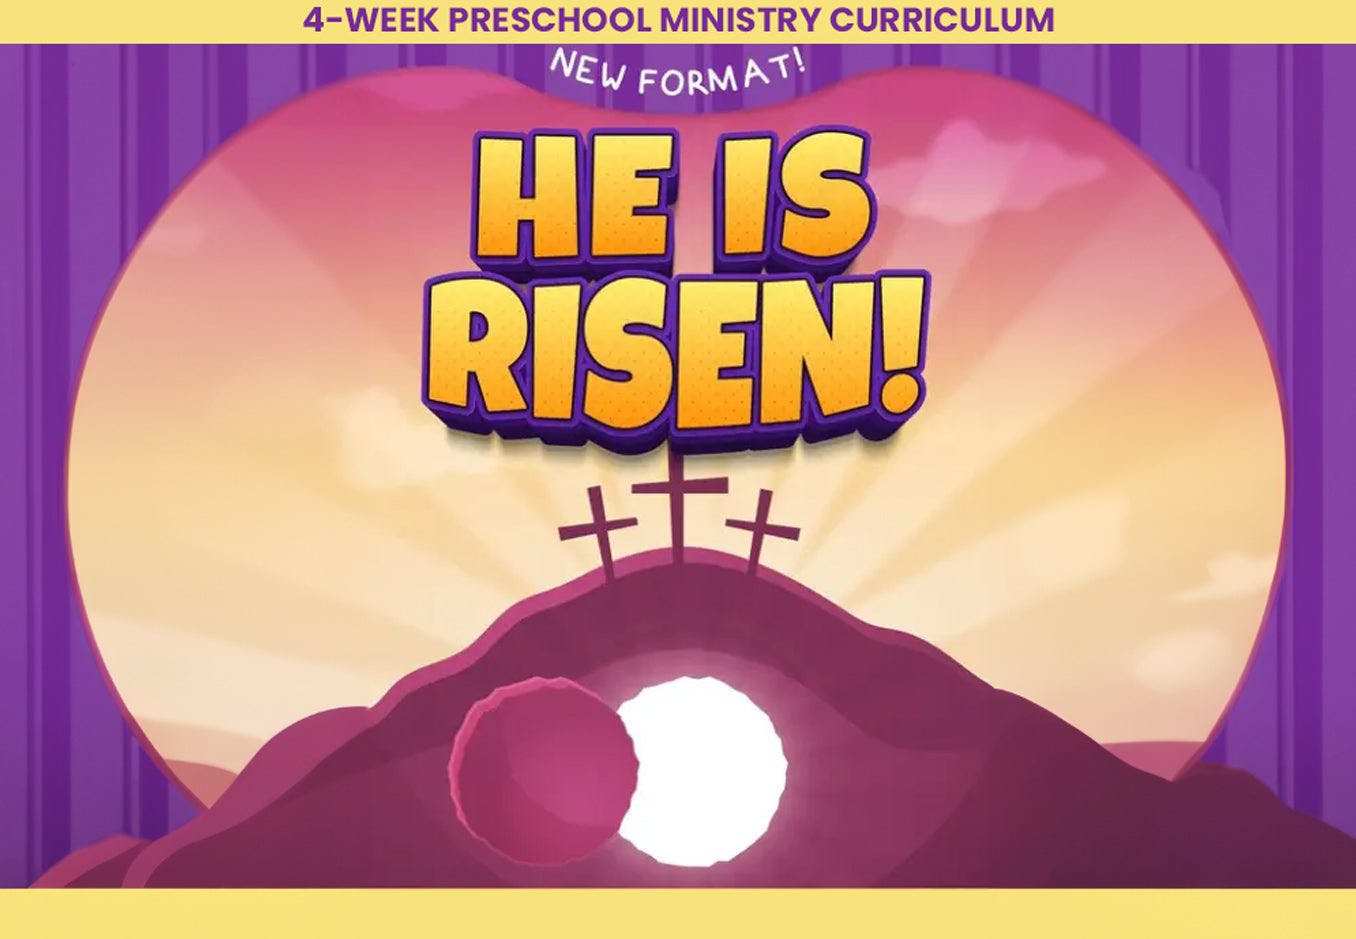 He Is Risen 4-Week Preschool Ministry Easter Curriculum